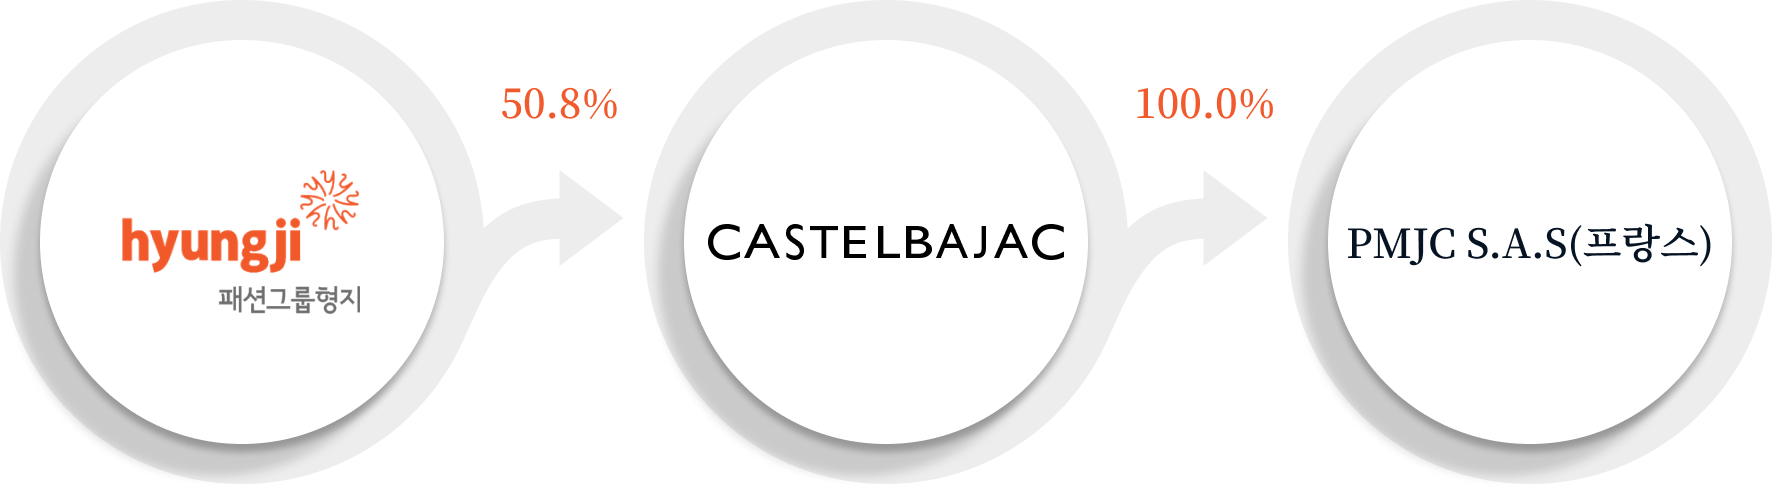 패션그룹형지 (50.8%)→ castelbajac (100%) → PMJC S.A.S(프랑스)